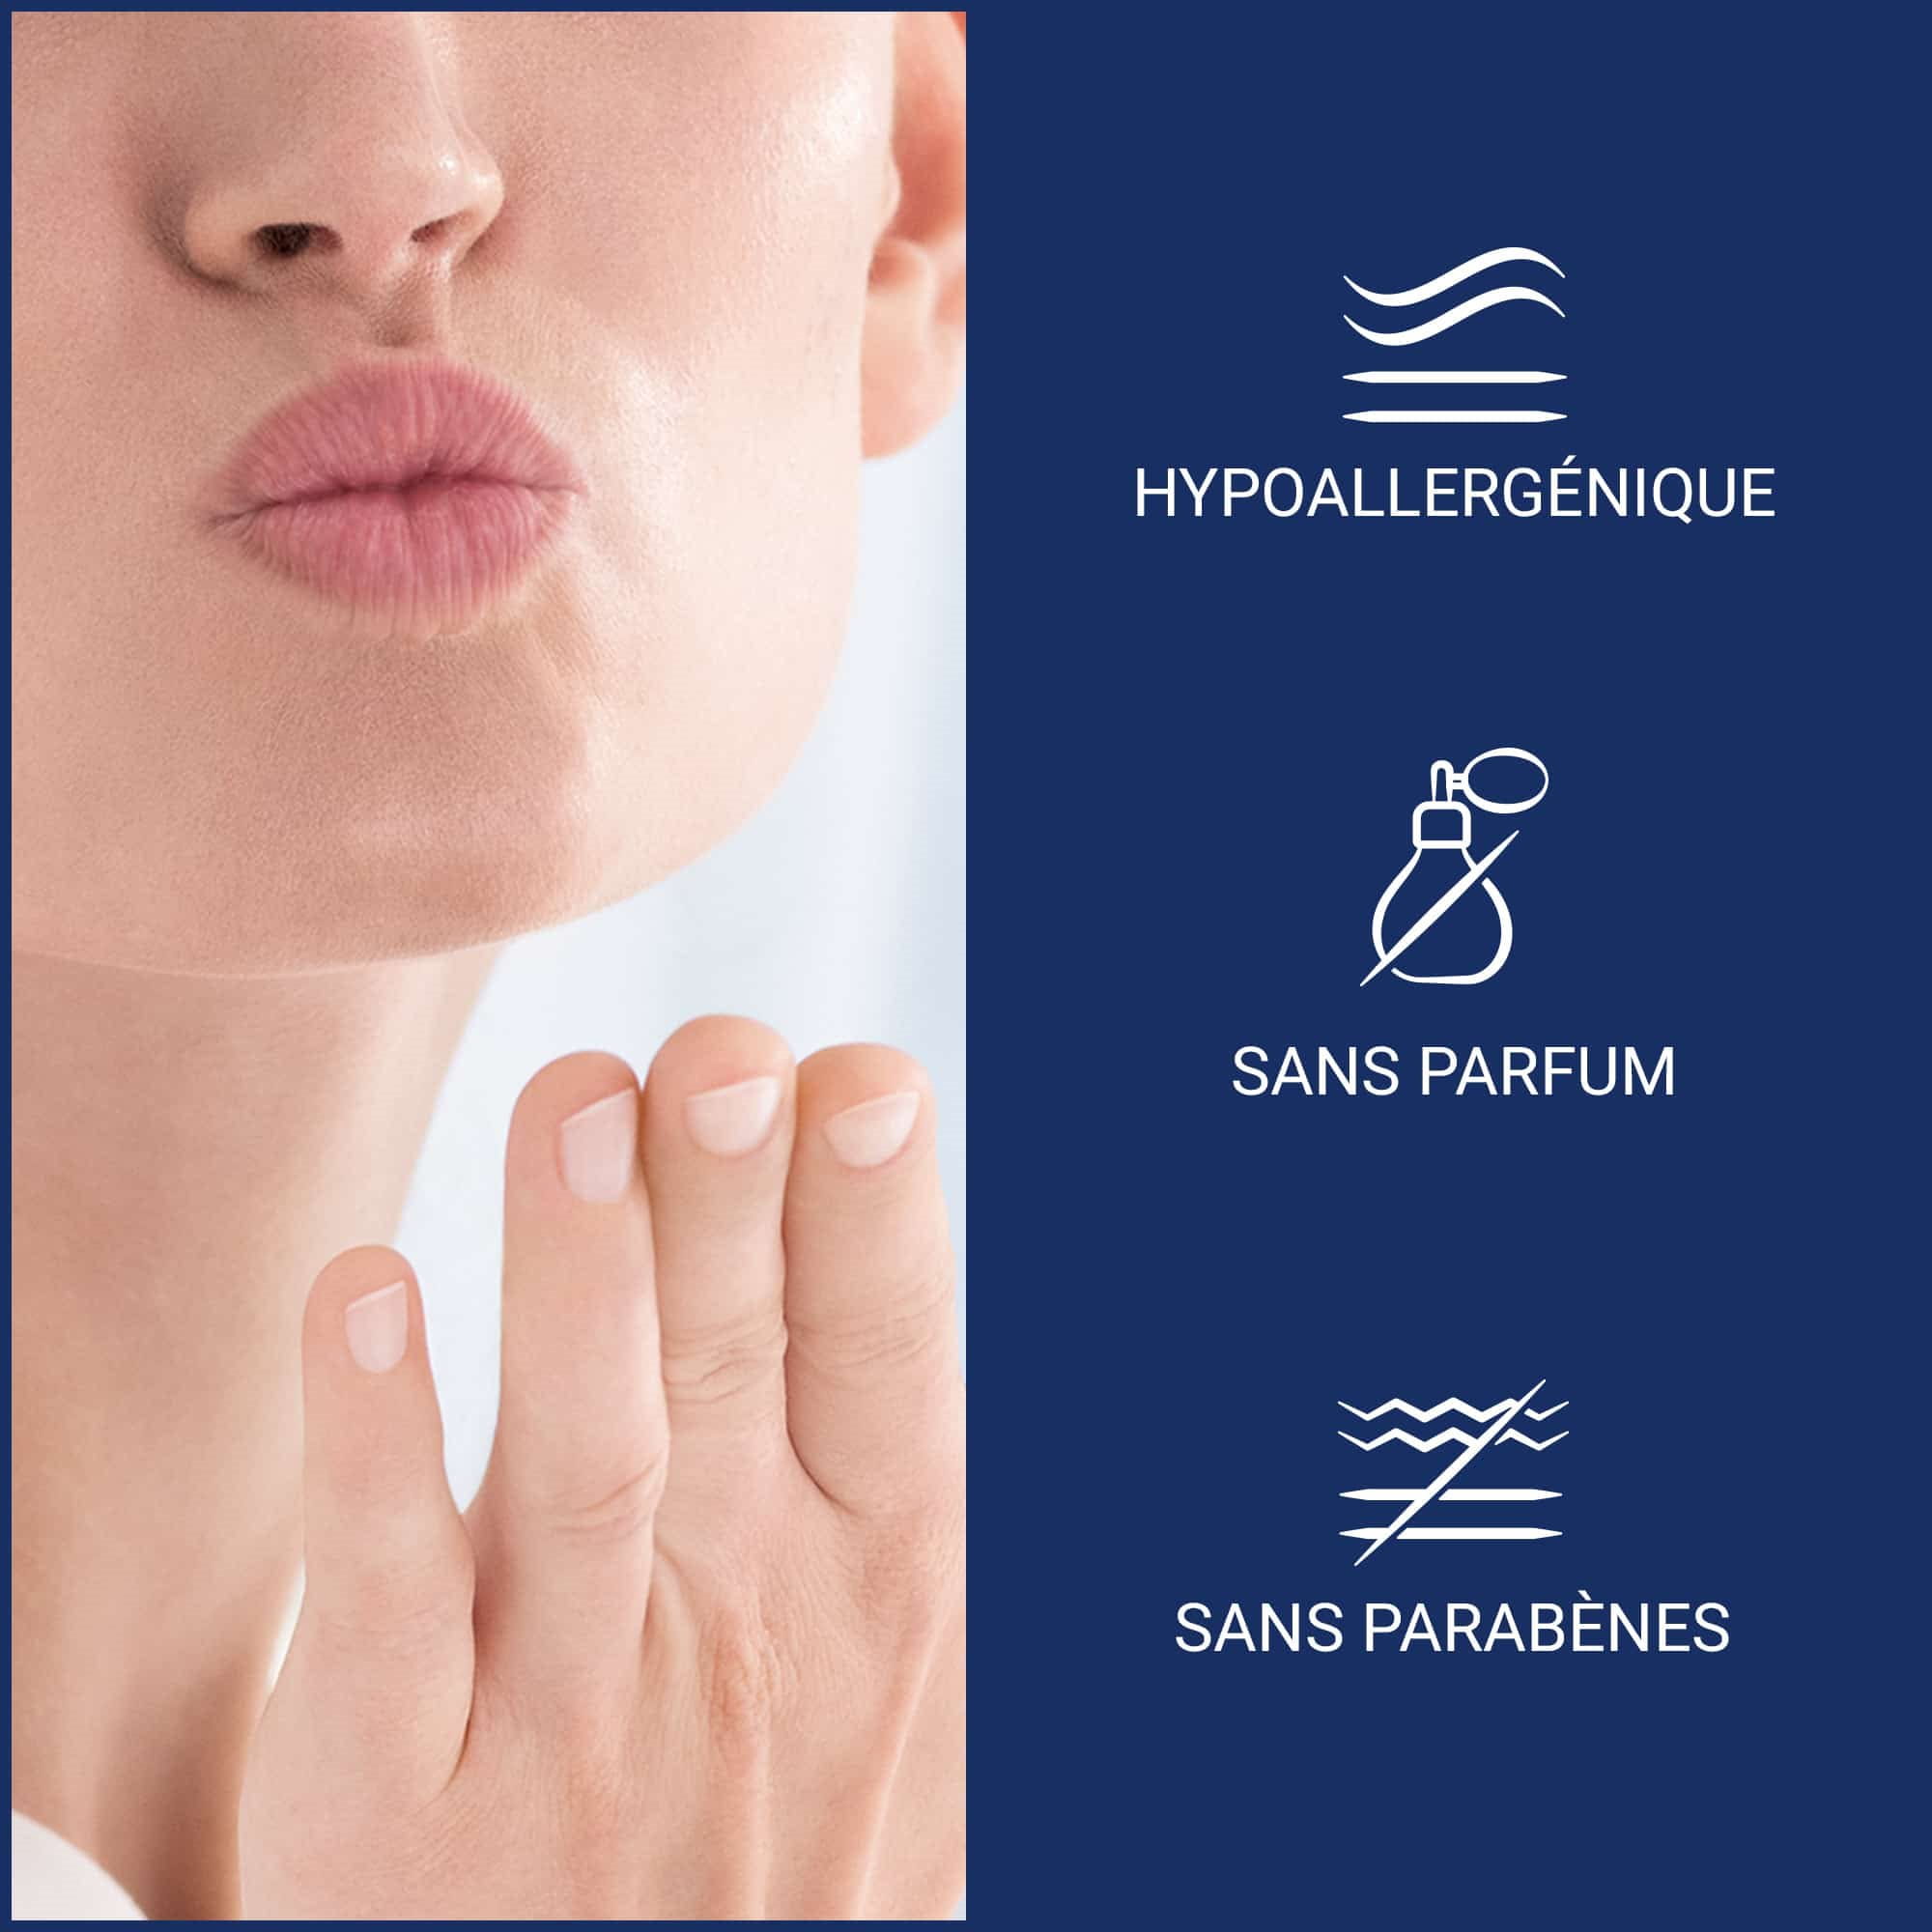 Image d’un visage de femme qui lance un baiser avec un geste de la main, accompagnée à droite de trois caractéristiques du Réparateur à lèvres Aquaphor.